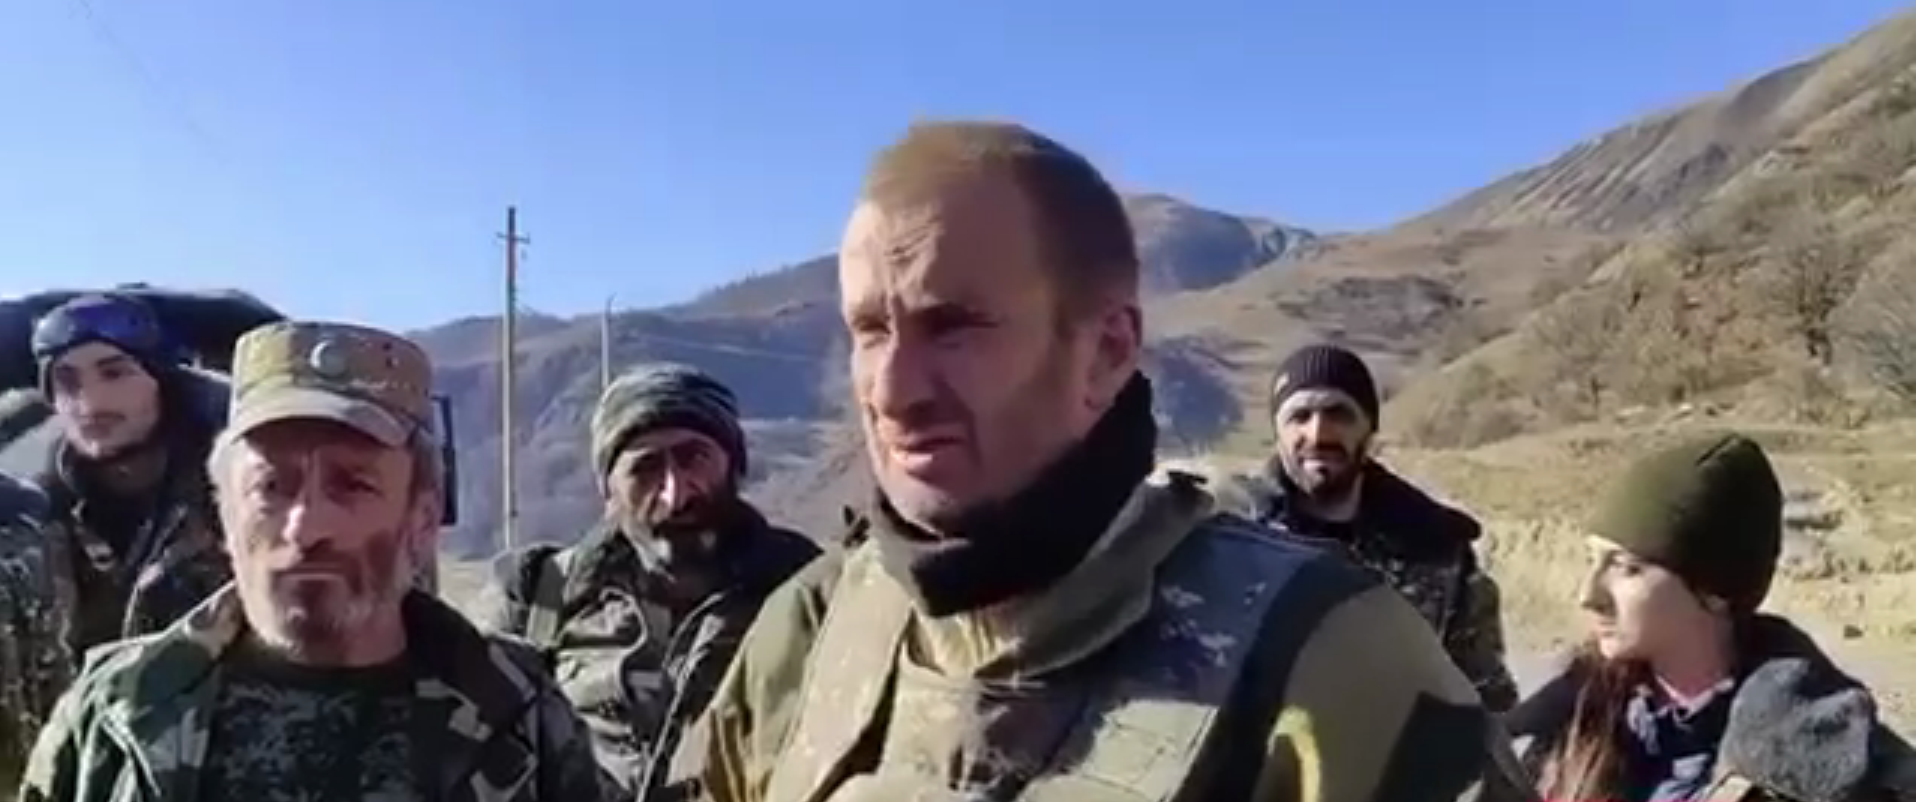 Наемник из РФ призвал земляков стать на "священную войну" против Азербайджана и Турции